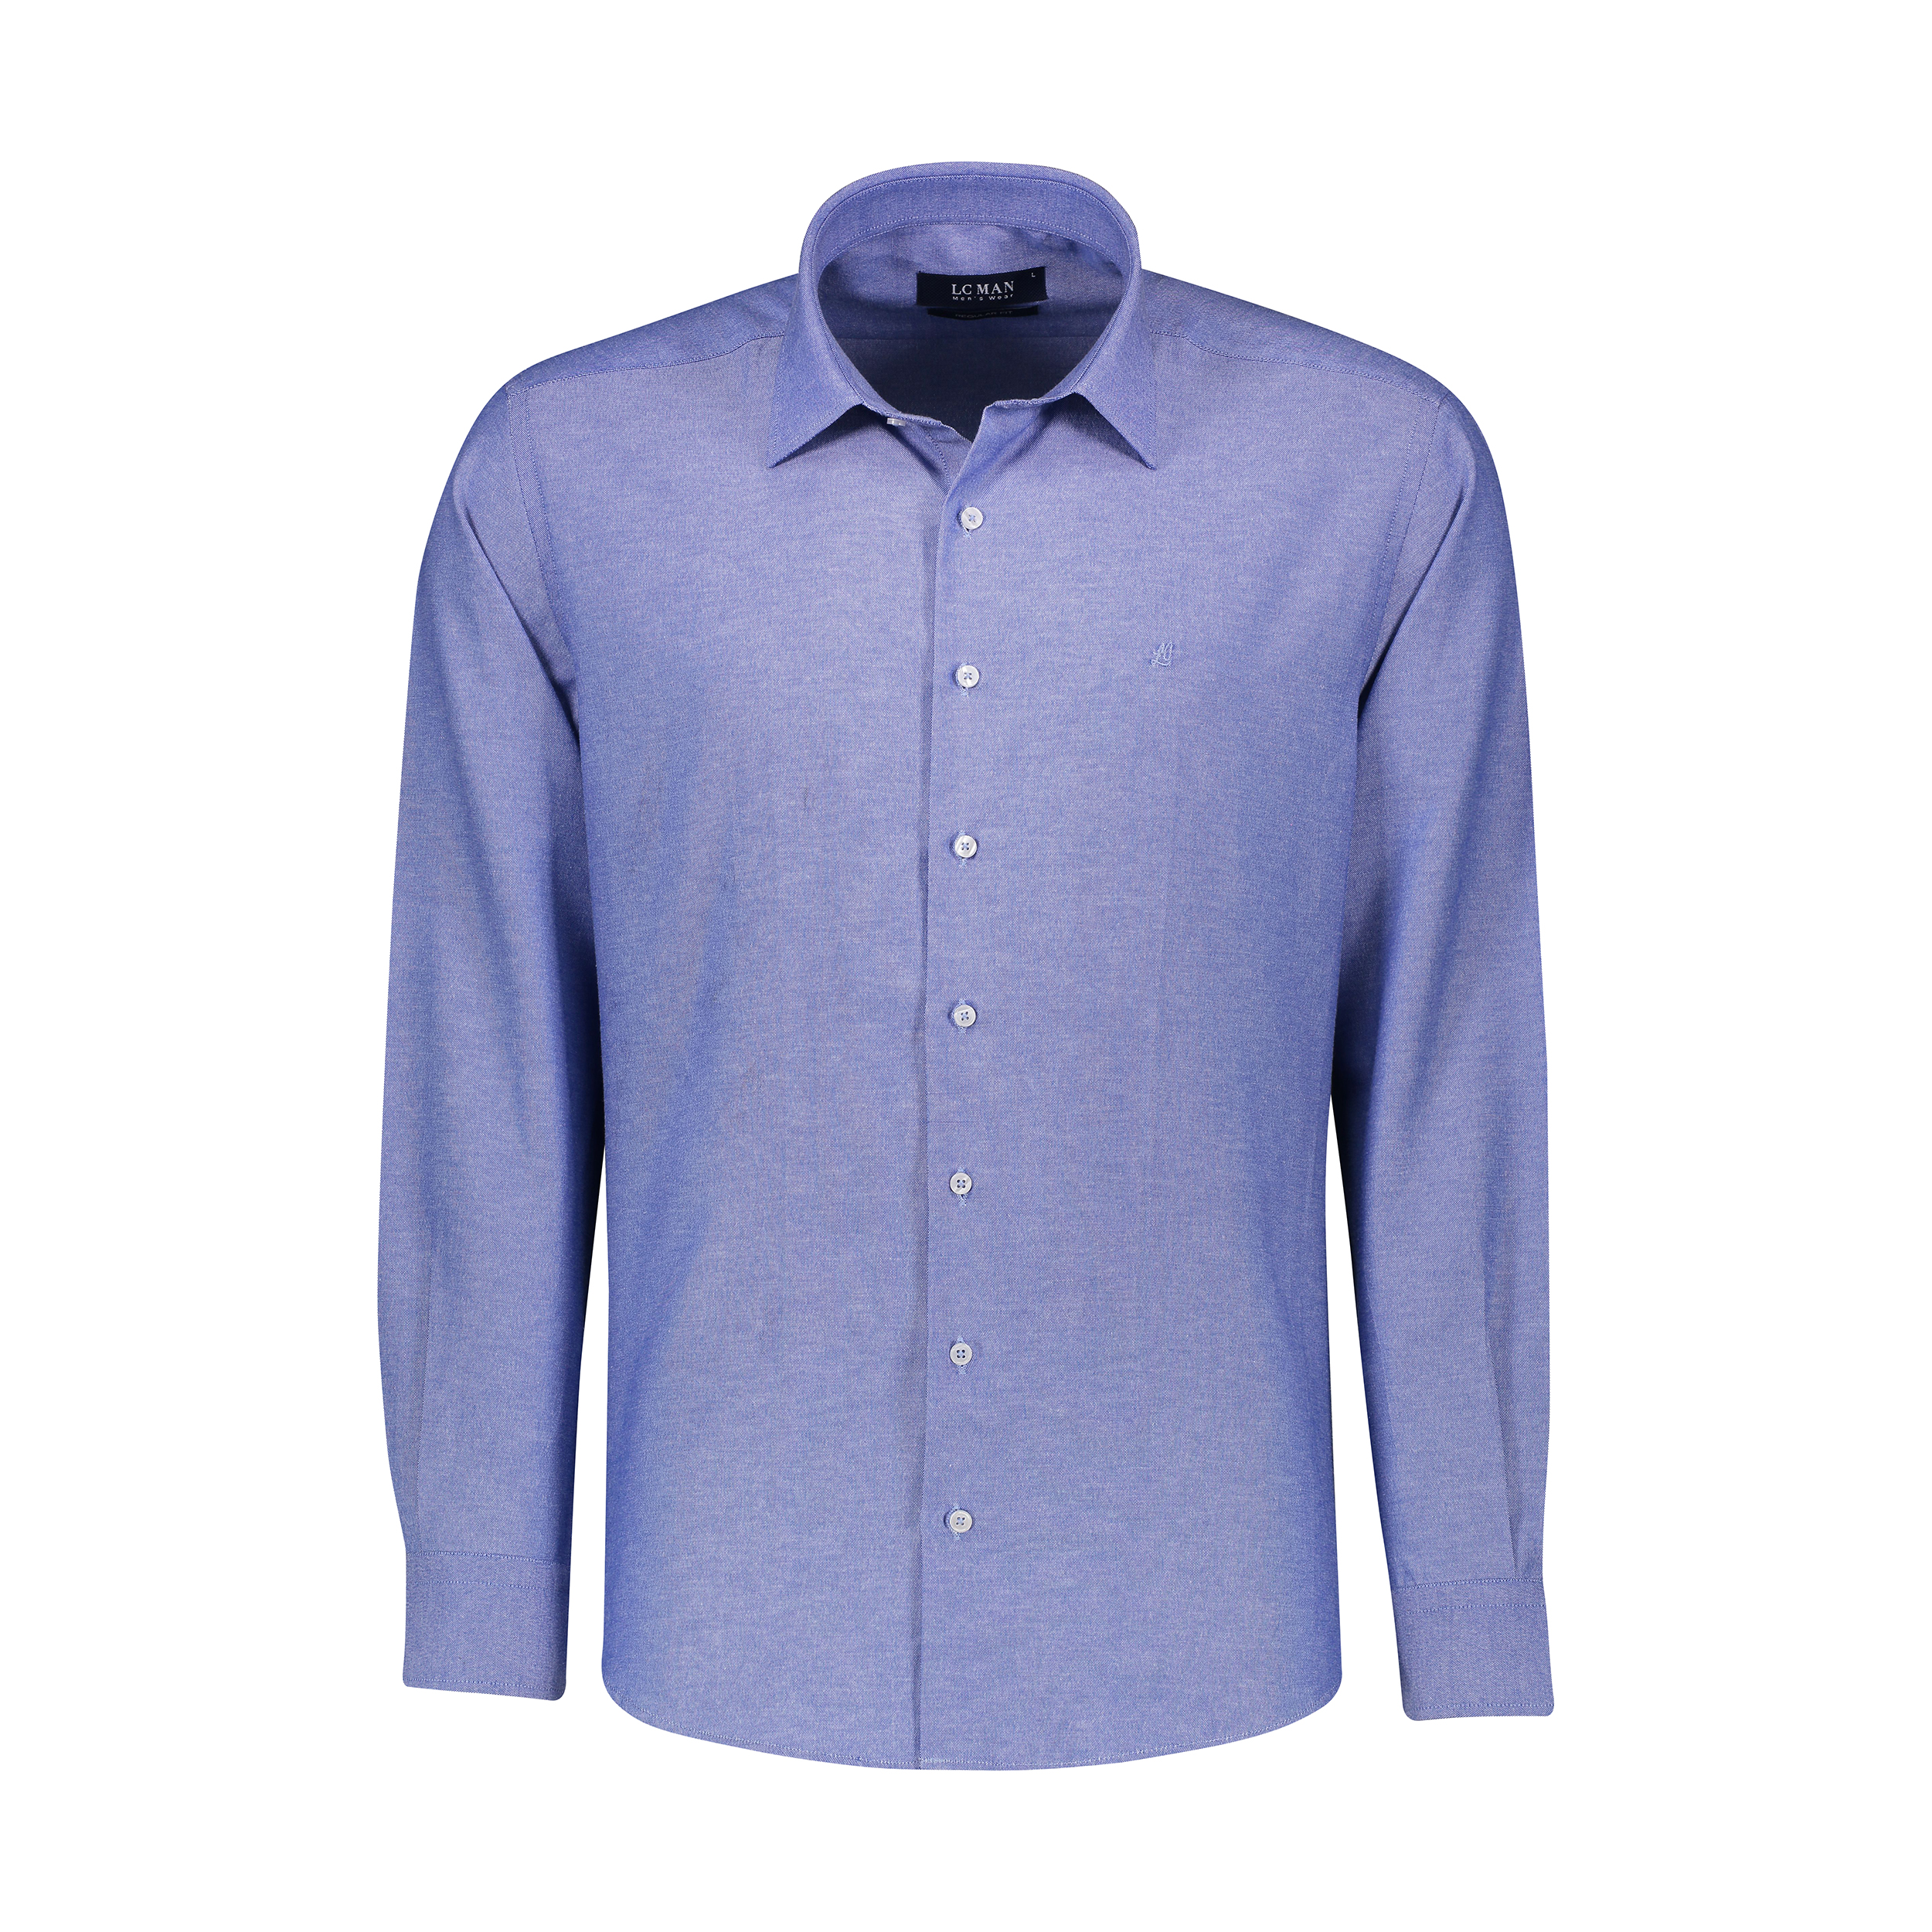 پیراهن آستین بلند مردانه ال سی من مدل 02181319-blue 180